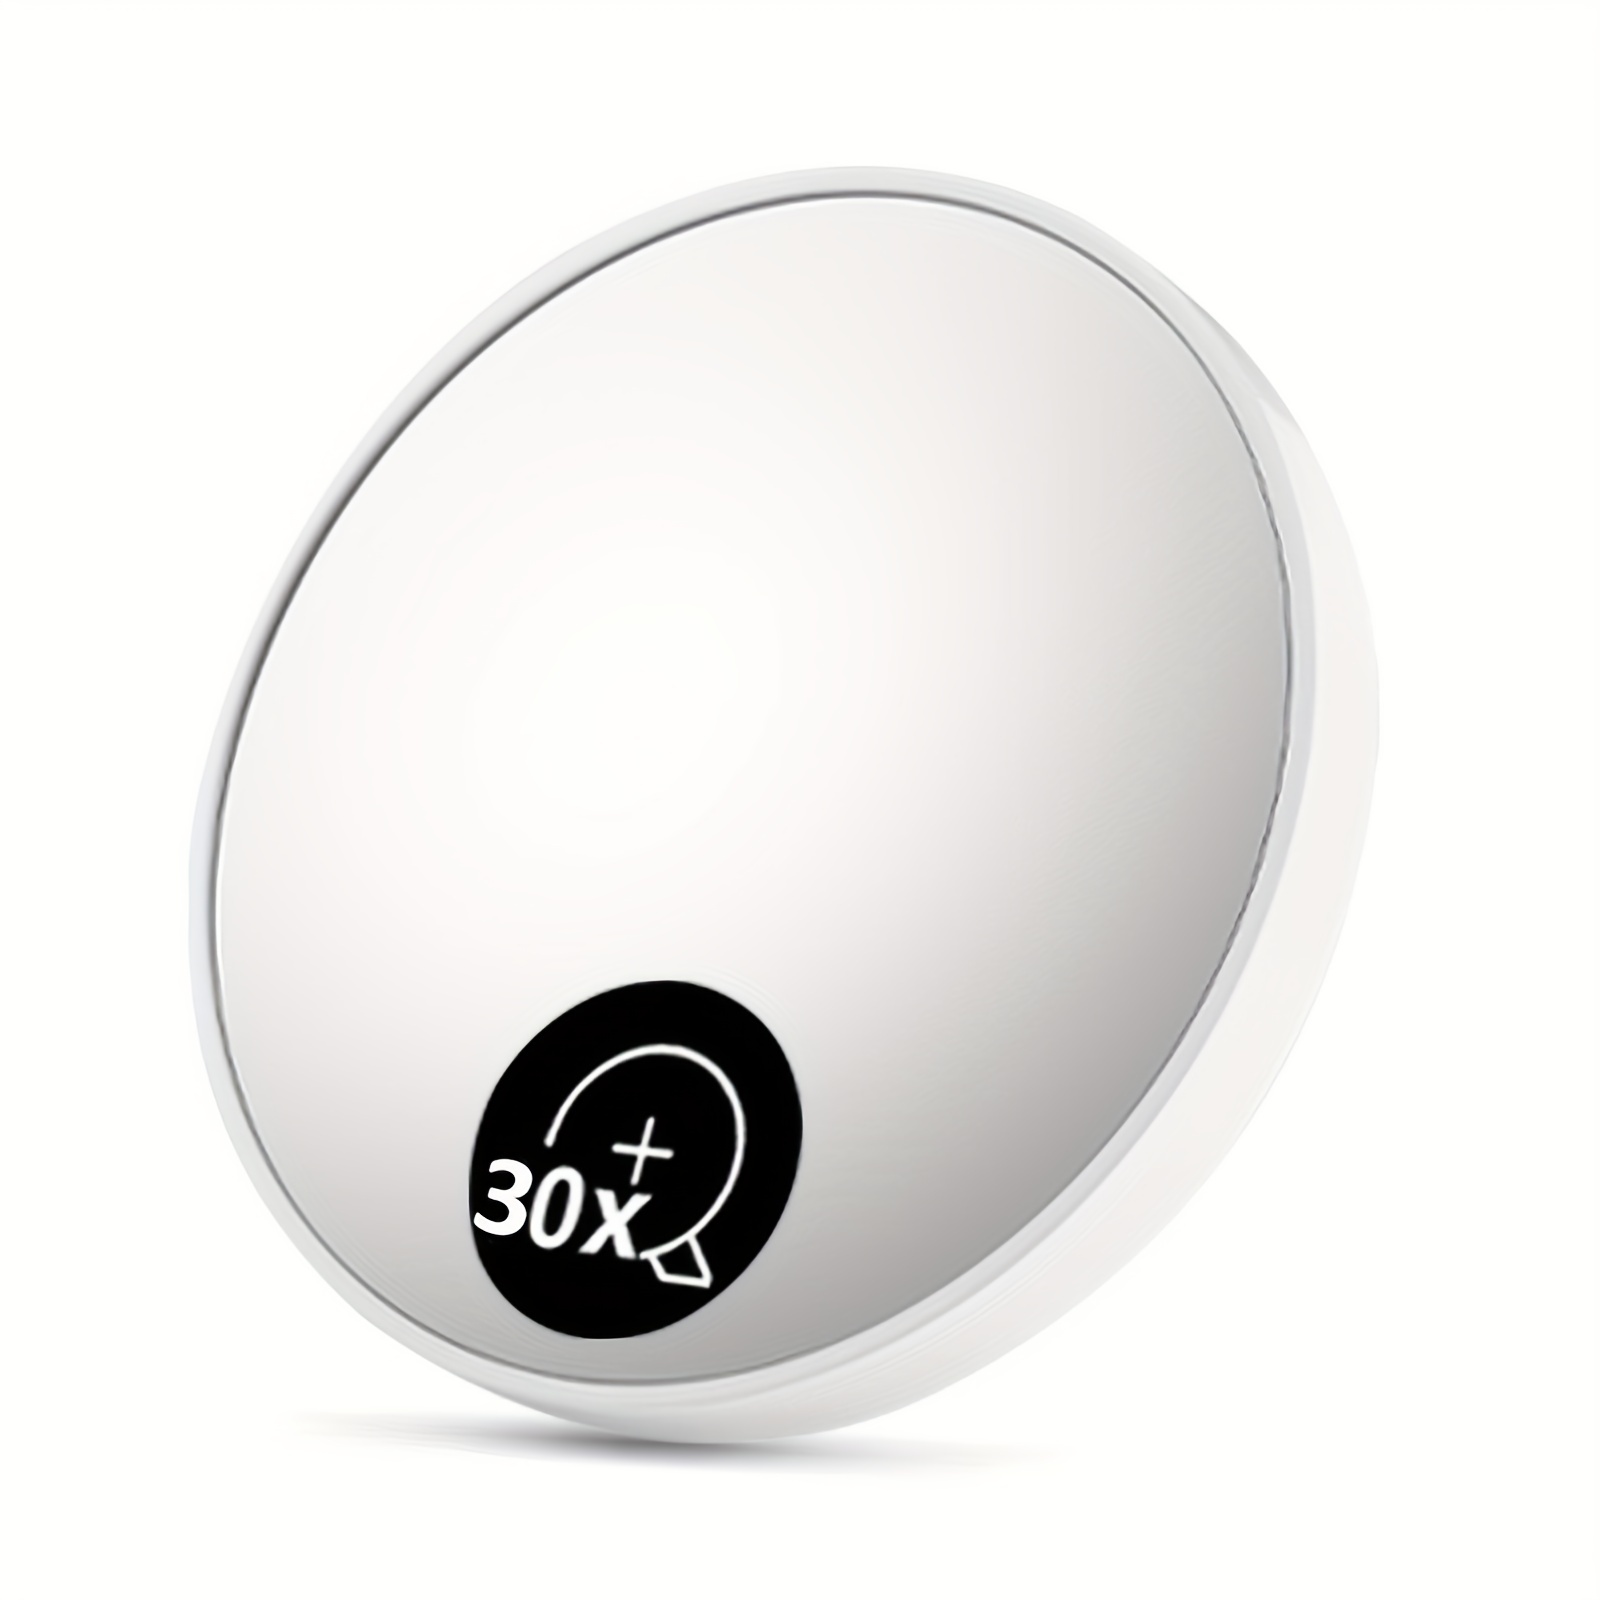 Espejo de aumento 30X, espejo de mano de dos caras 30X/1X, espejo de viaje  para aplicaciones precisas de maquillaje, pinzas y eliminación de puntos